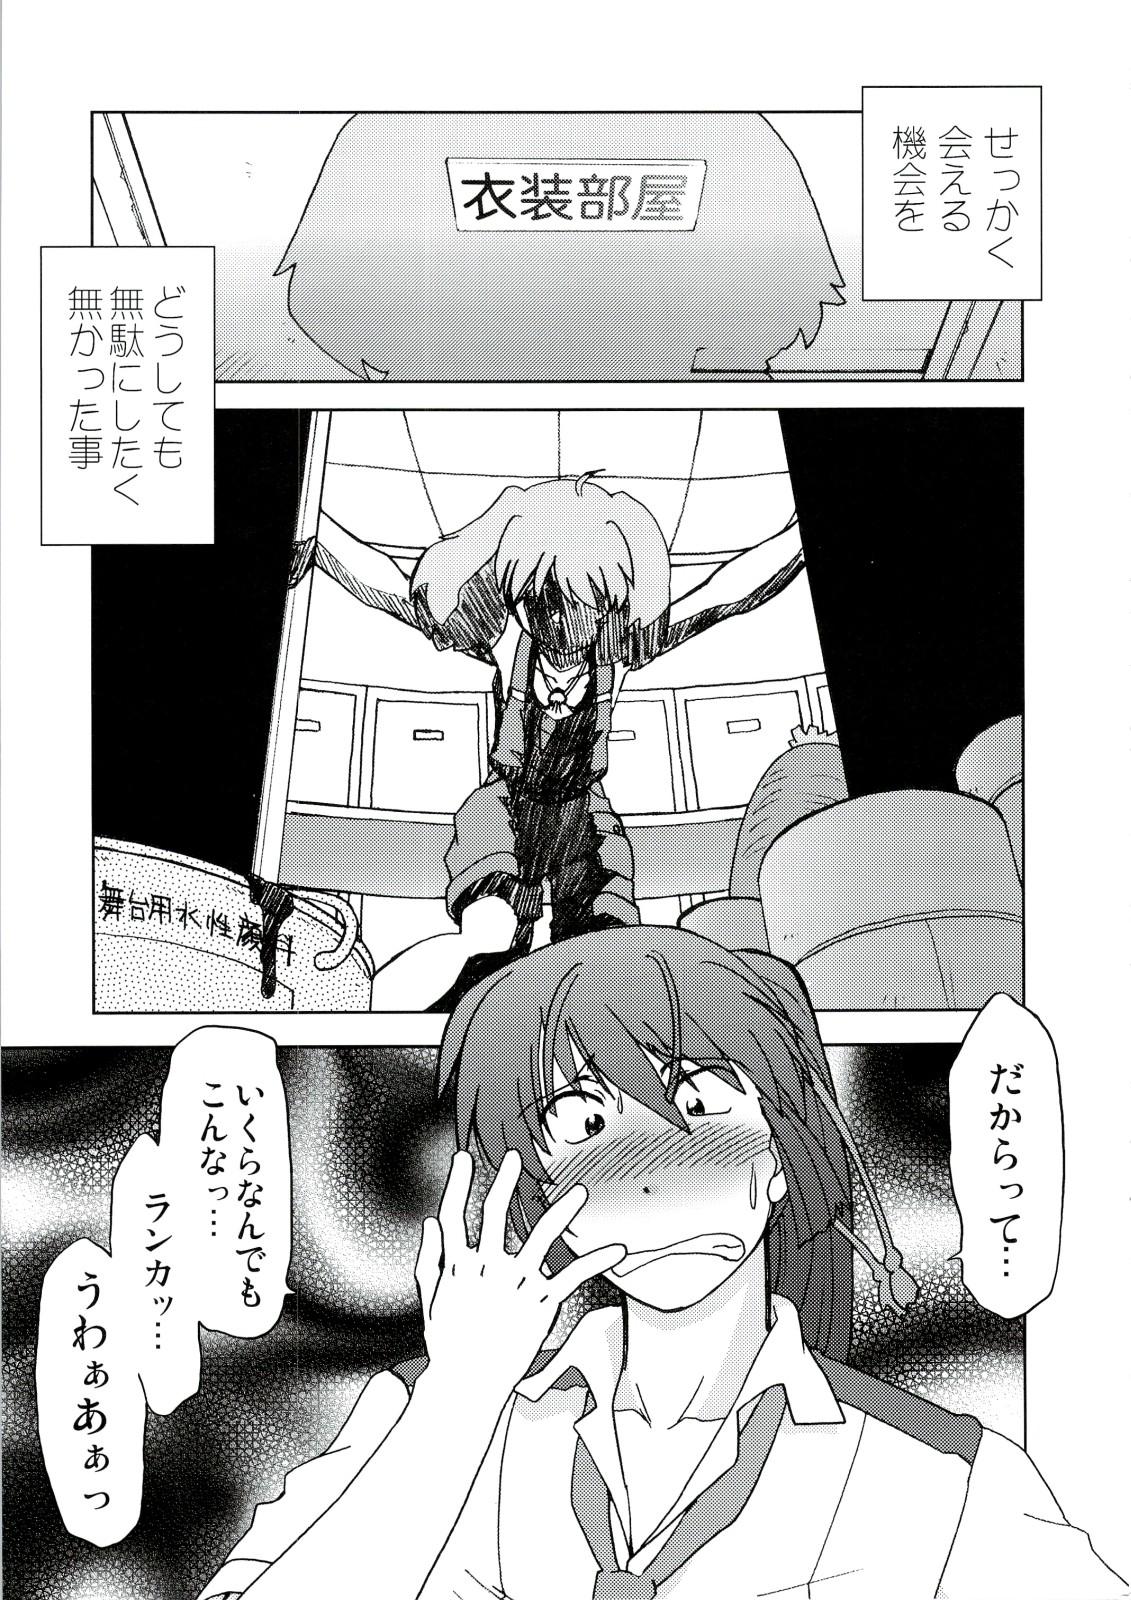 Rubbing Kishou Tenketsu 6 - Macross frontier Dick Sucking - Page 12